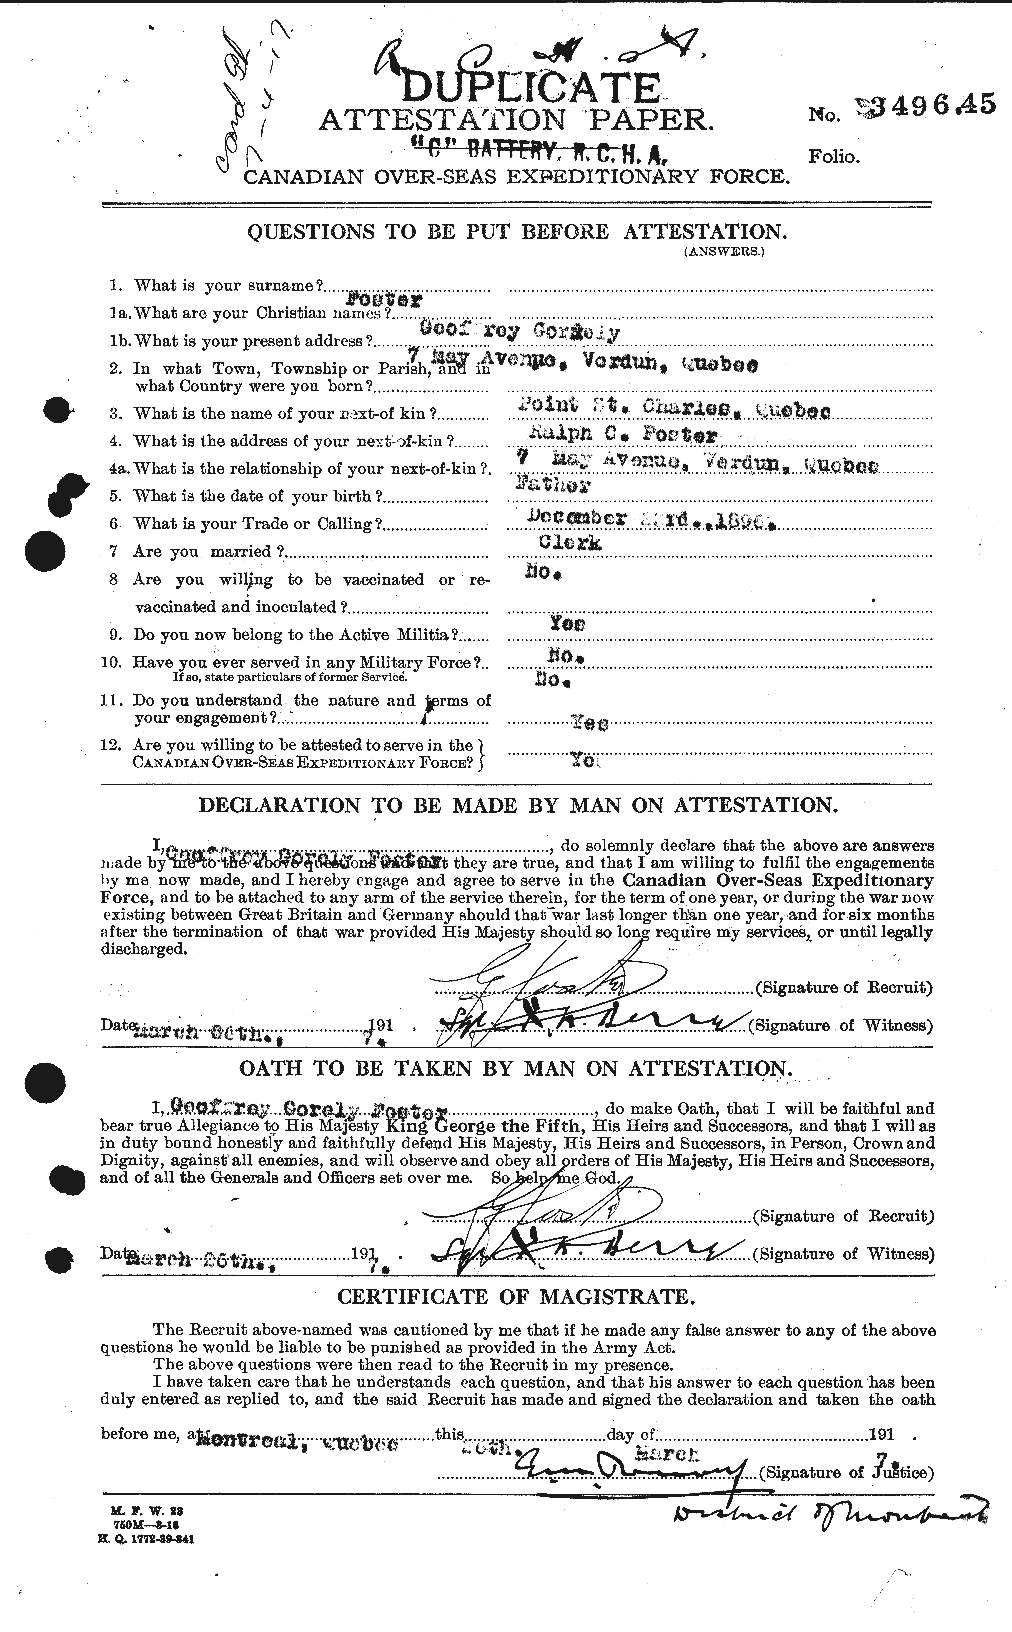 Dossiers du Personnel de la Première Guerre mondiale - CEC 330660a